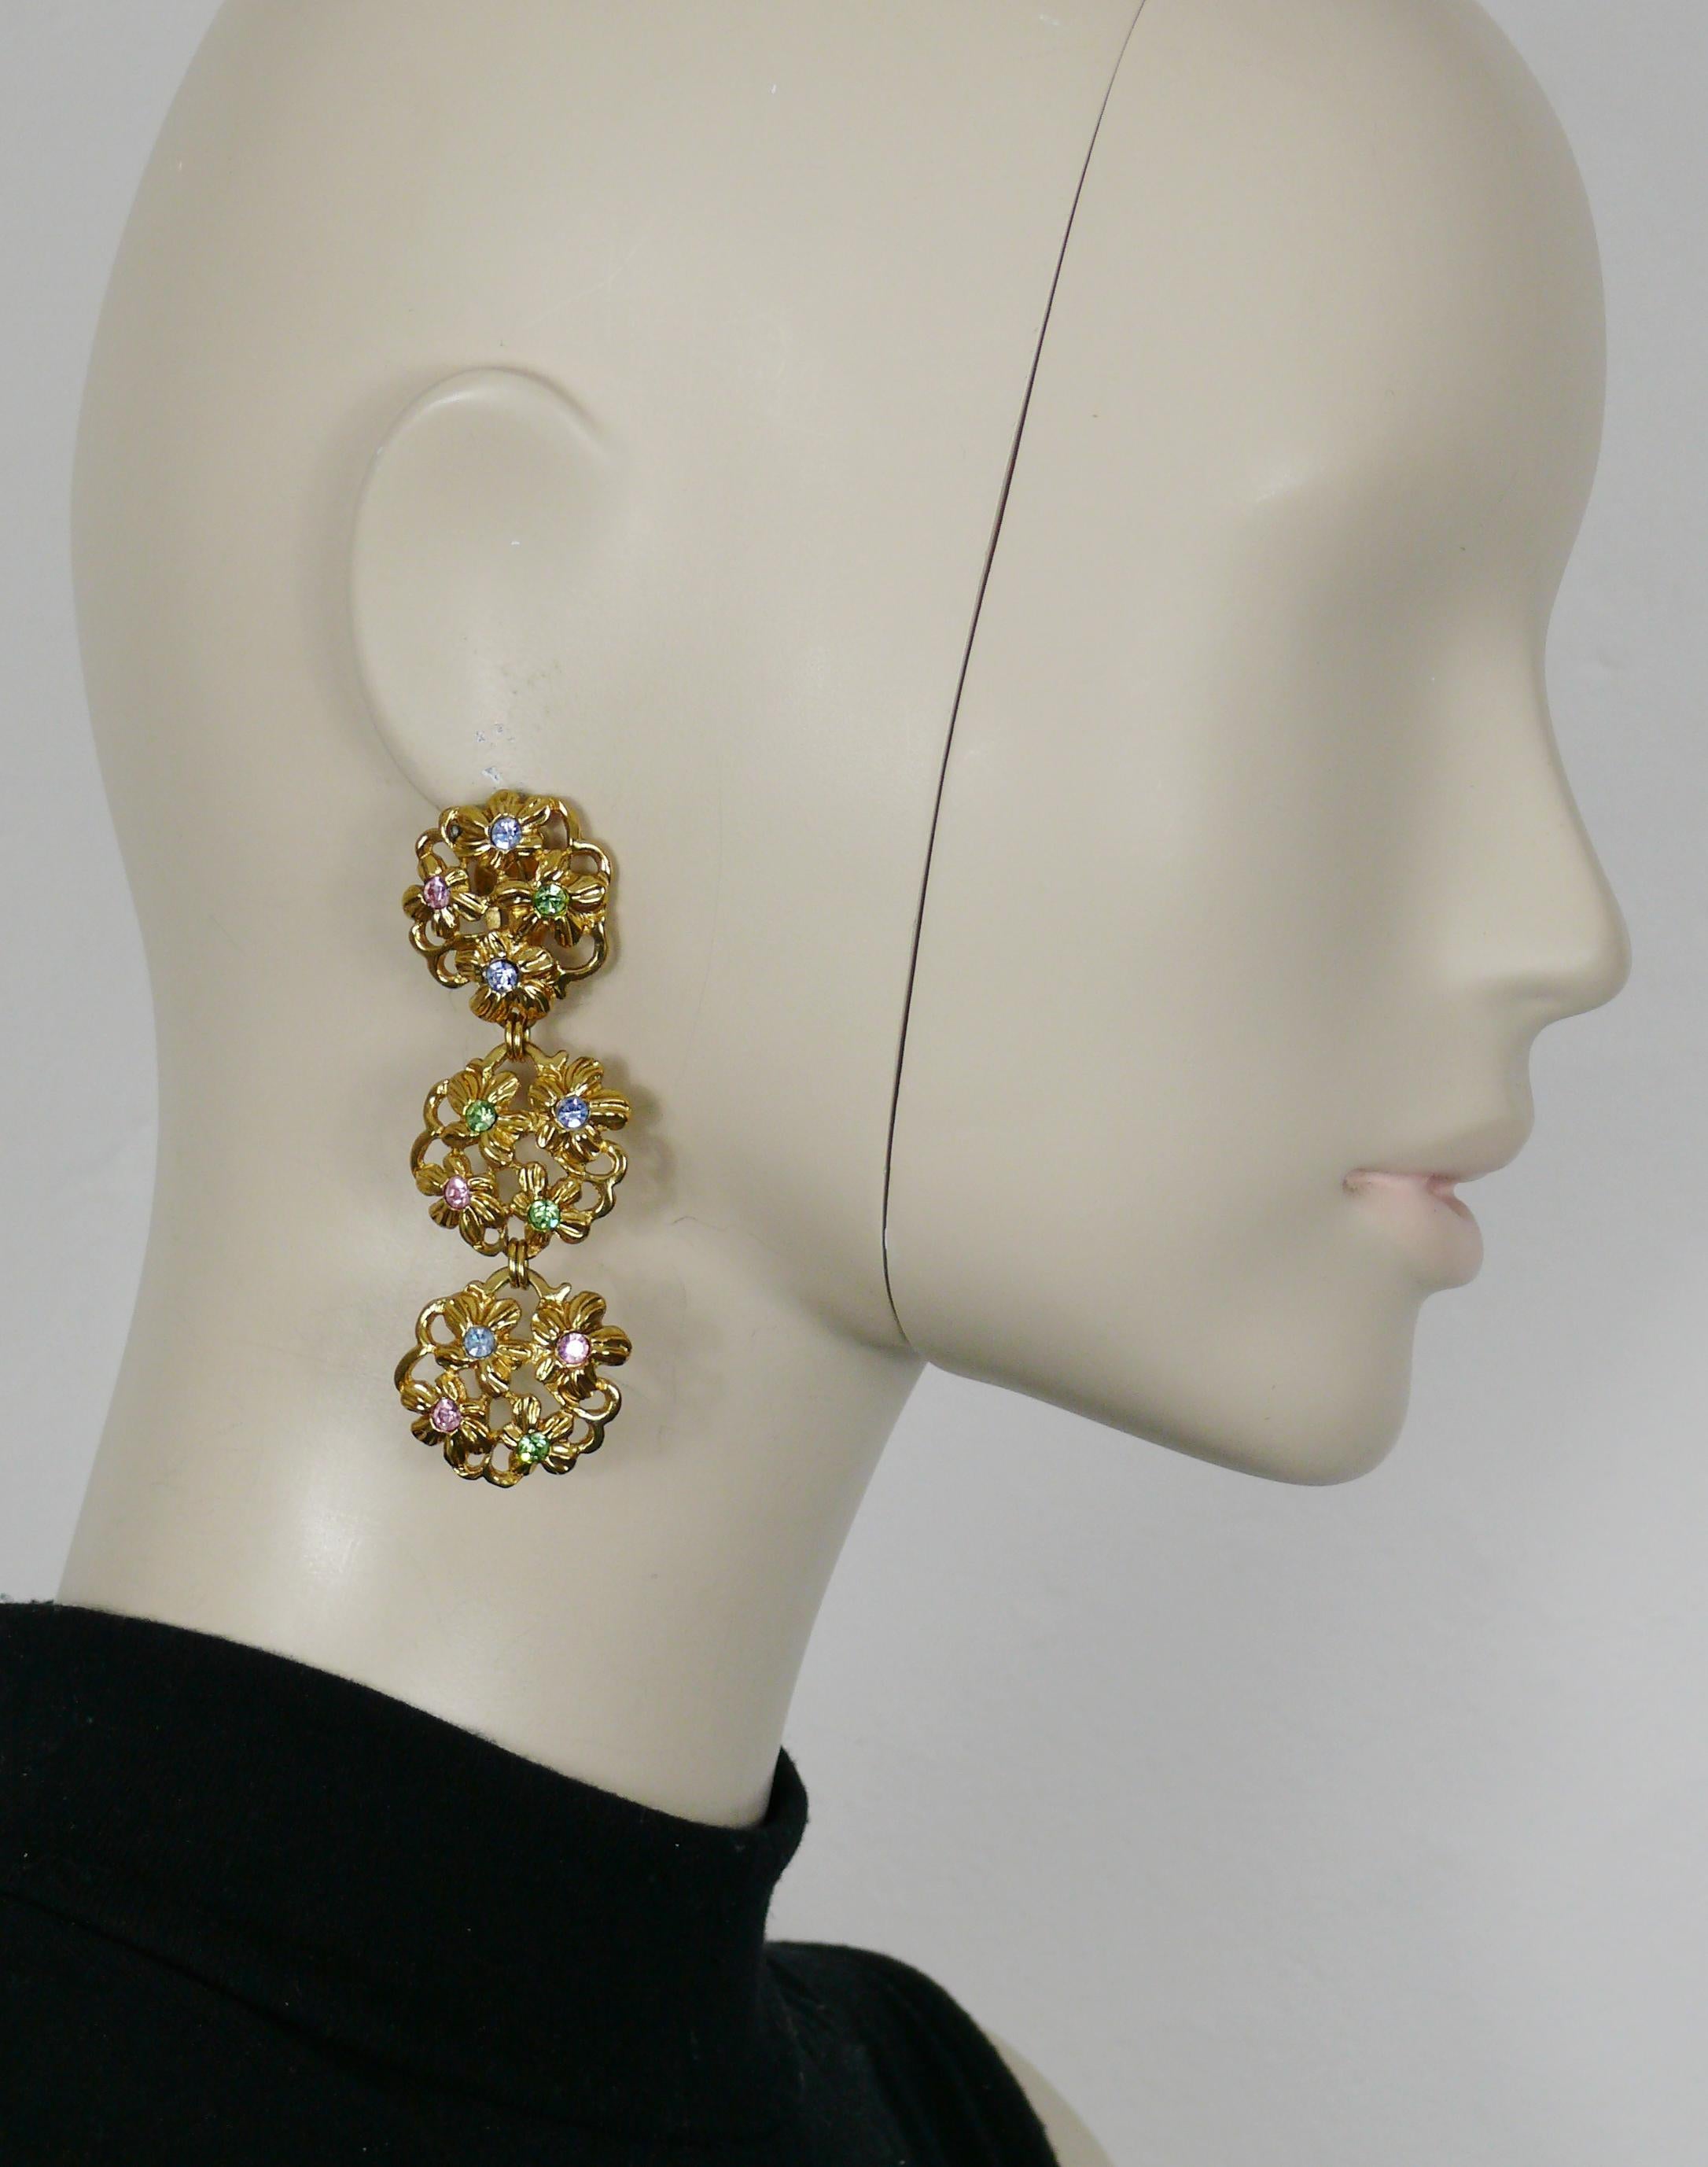 Boucles d'oreilles vintage YVES SAINT LAURENT (clip-on) en forme de fleur en or, ornées de cristaux multicolores.

Embossé YSL.
Fabriqué en France.

Mesures indicatives : hauteur environ 8 cm (3.15 inches) / largeur environ 2.5 cm (0.98